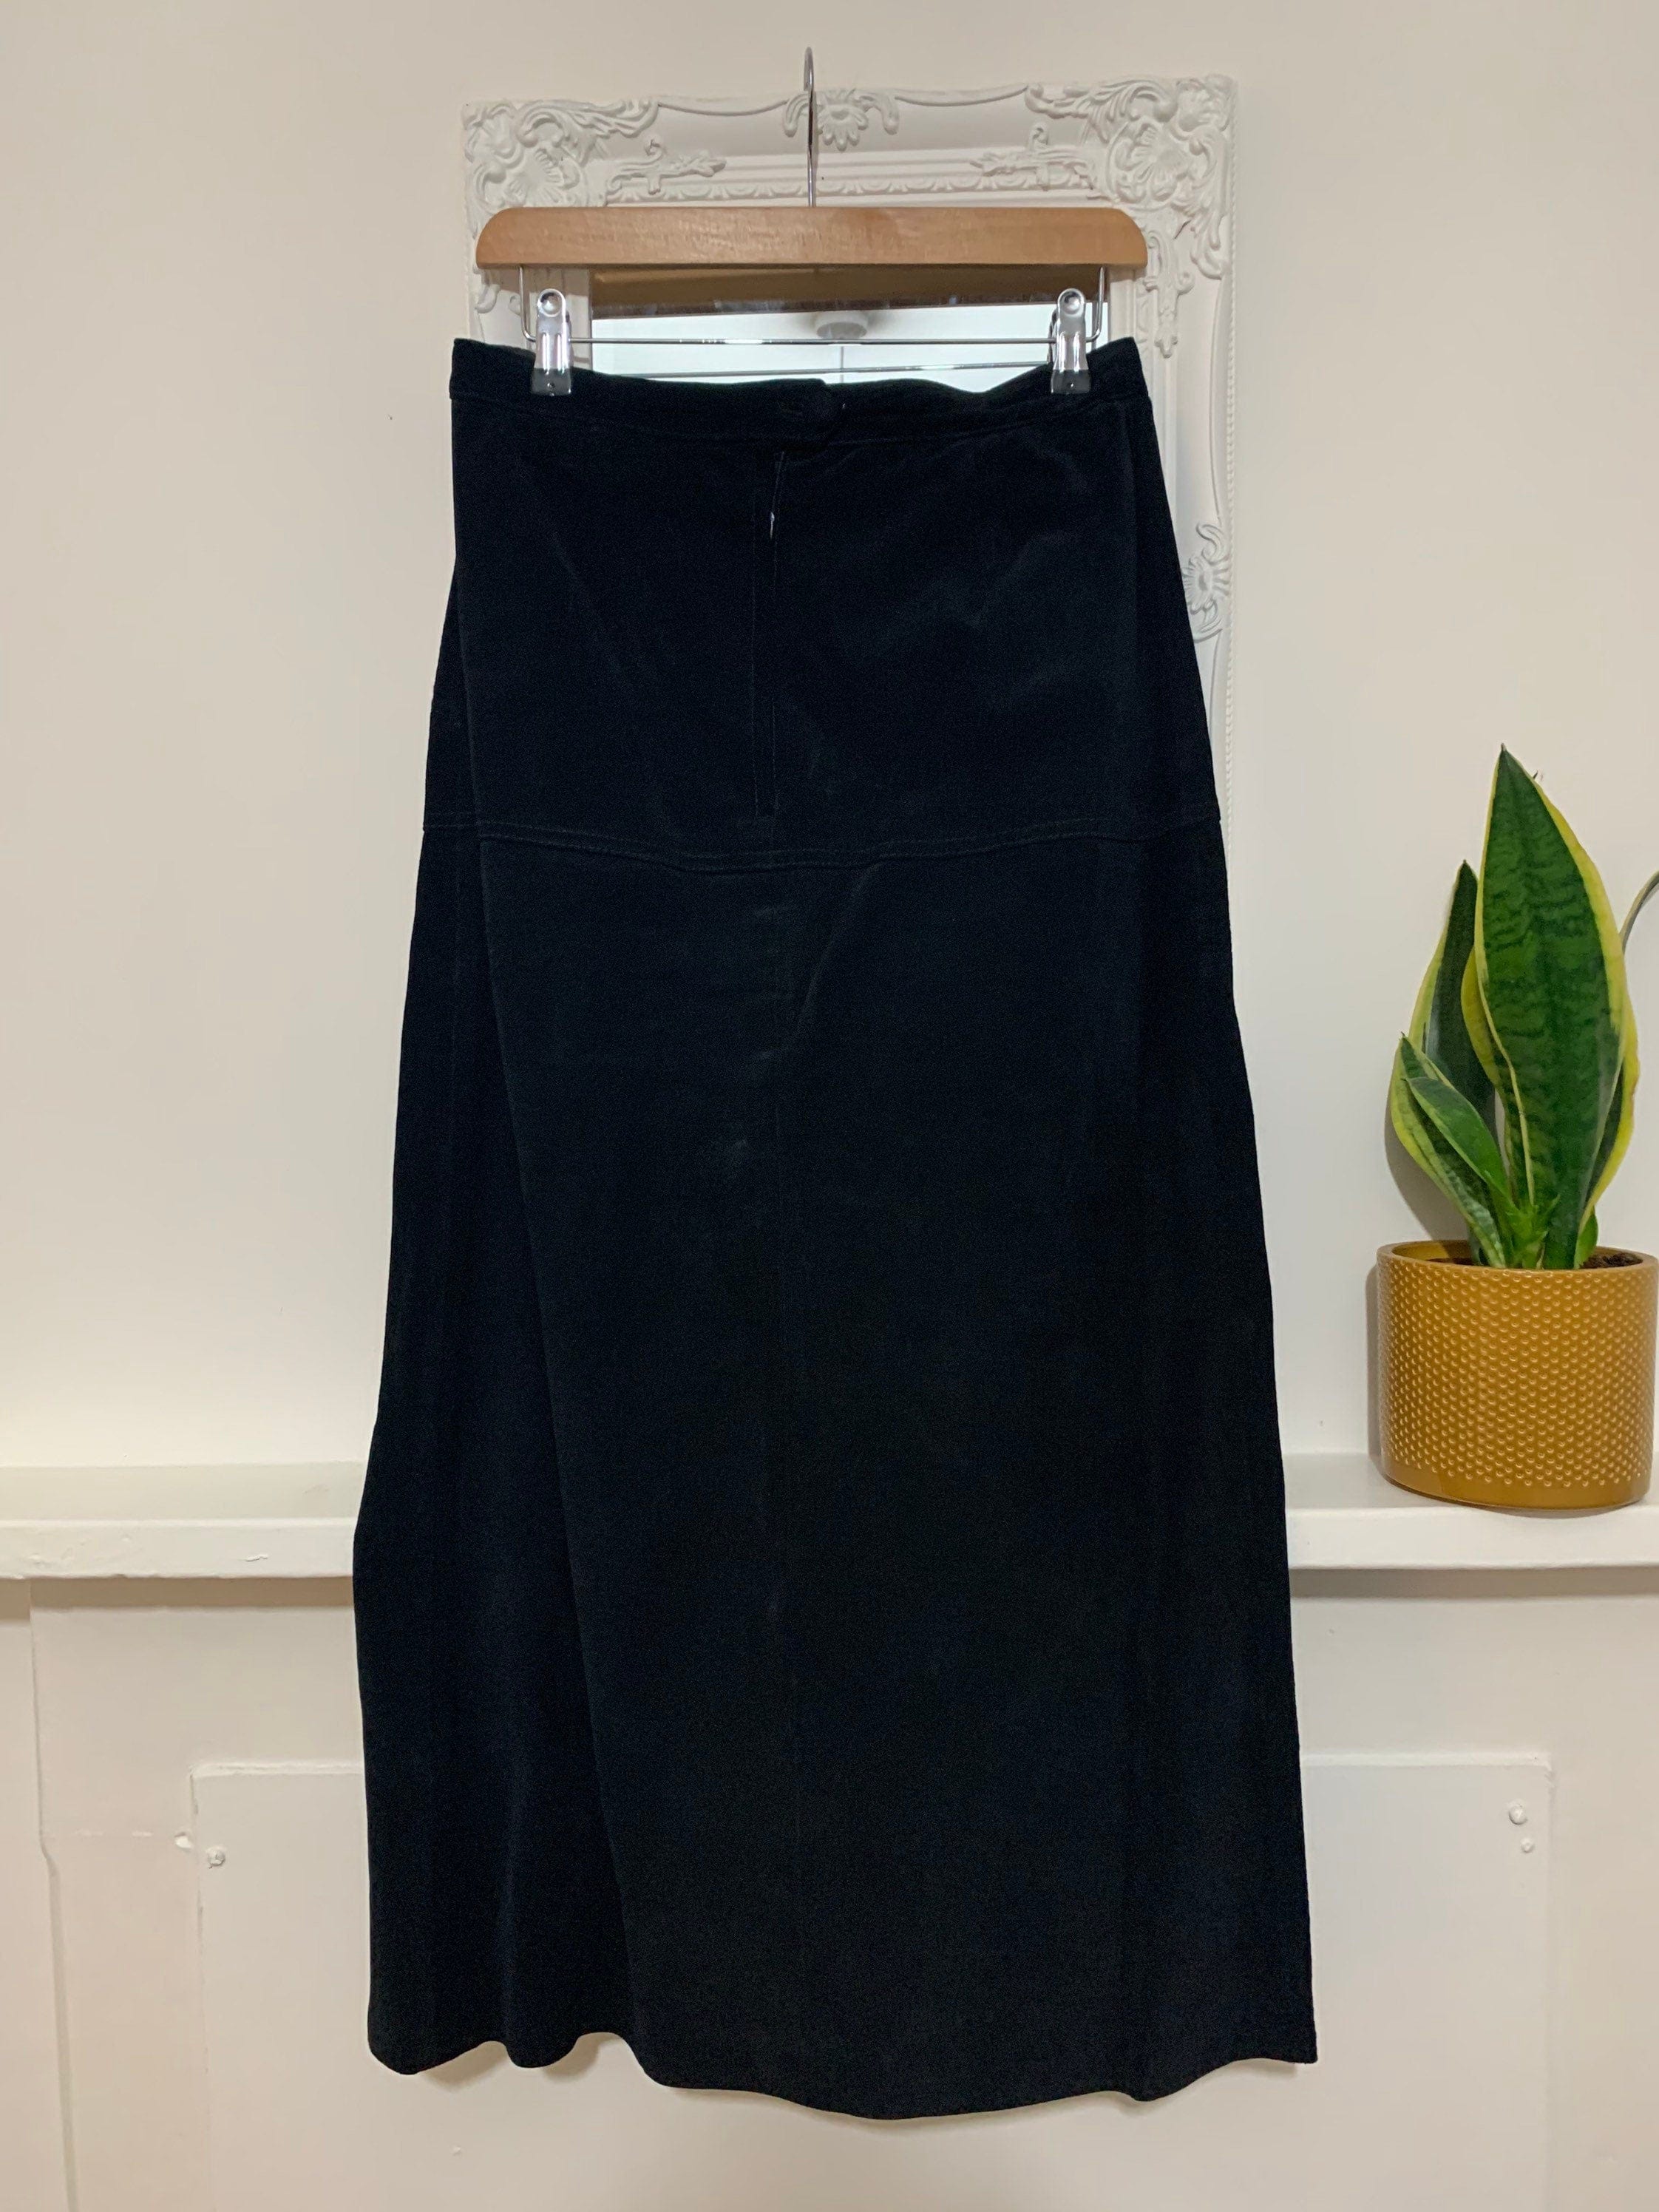 Suede Vintage Skirt Black Fully Lined Front Split - Vintage Skirt ...